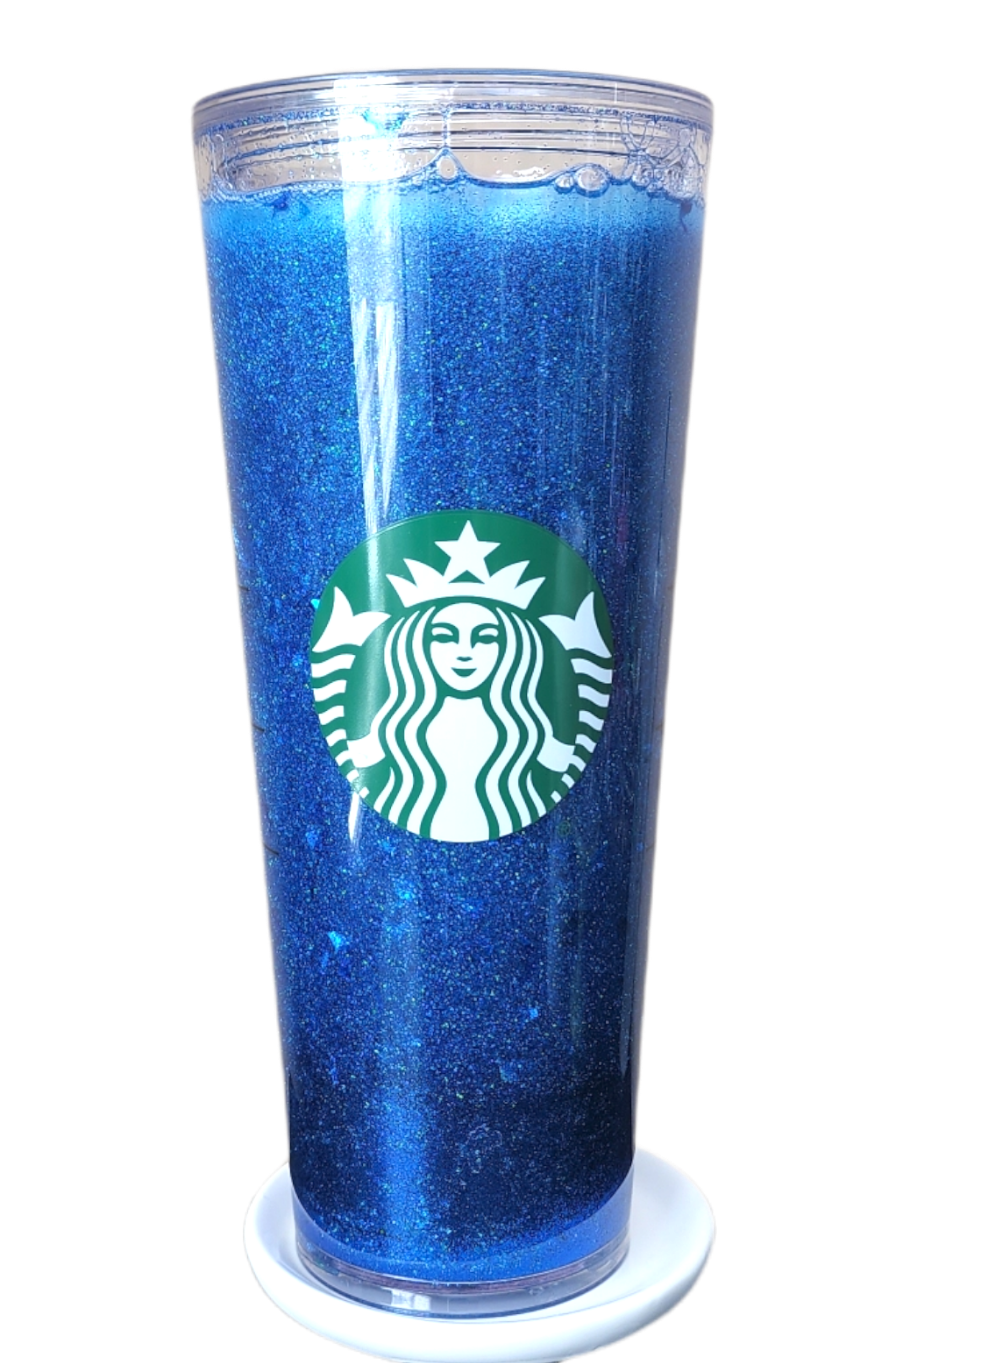 Blue Lemonade Snow Globe Tumbler, Starbucks Tumbler, Blue Drink